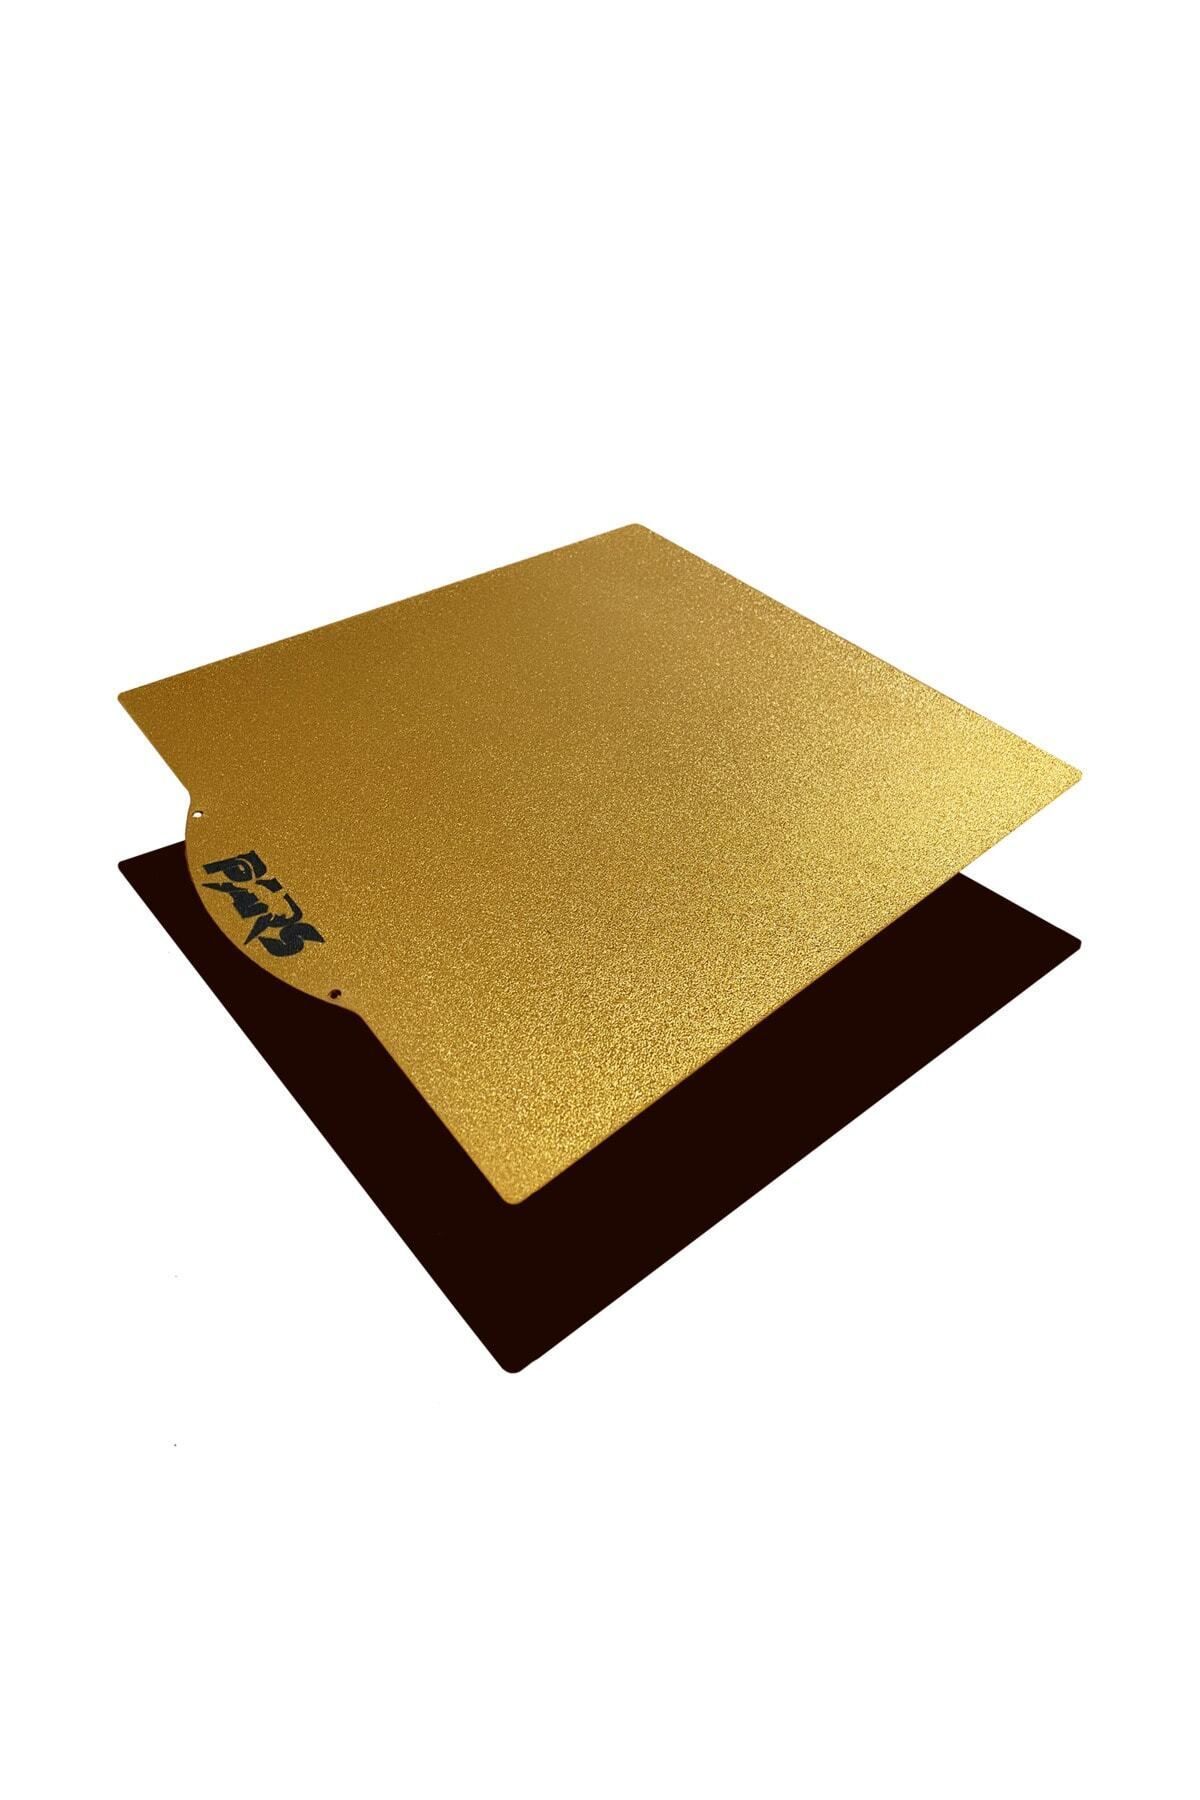 Pars 275x295 Mm Gold Pei Kaplı Özel Yay Çeliği Magnetli